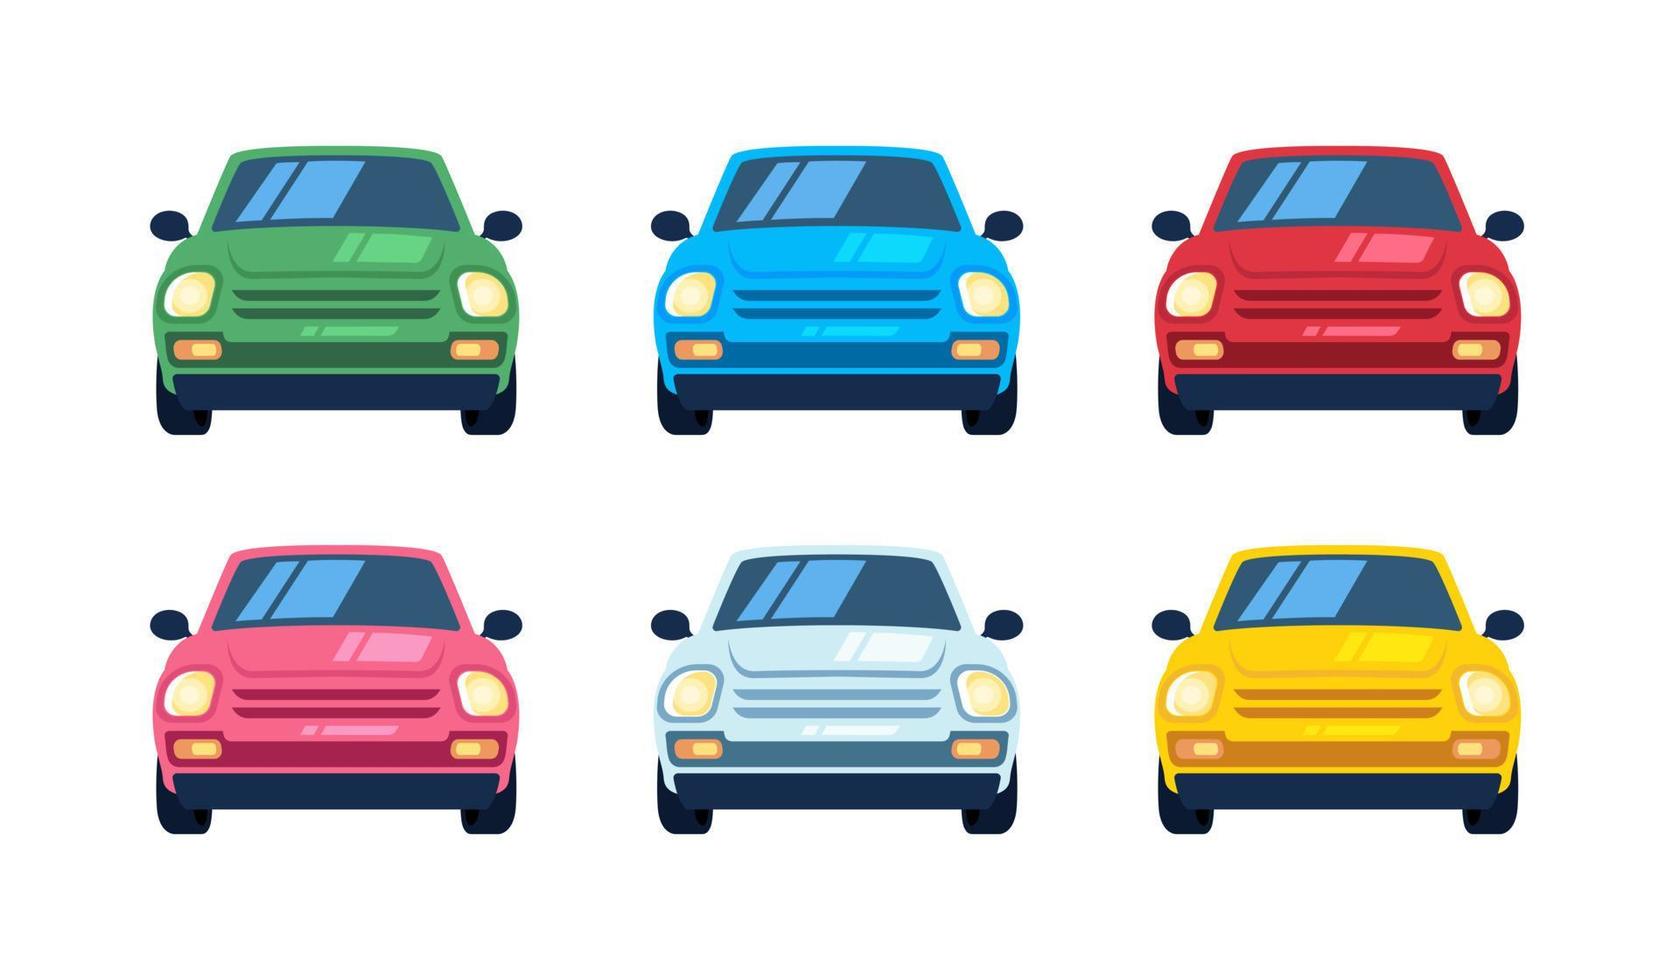 conjunto de carros pequenos dos desenhos animados, vista frontal. veículos urbanos de cores diferentes, conjunto de ilustração de design de carro. vetor